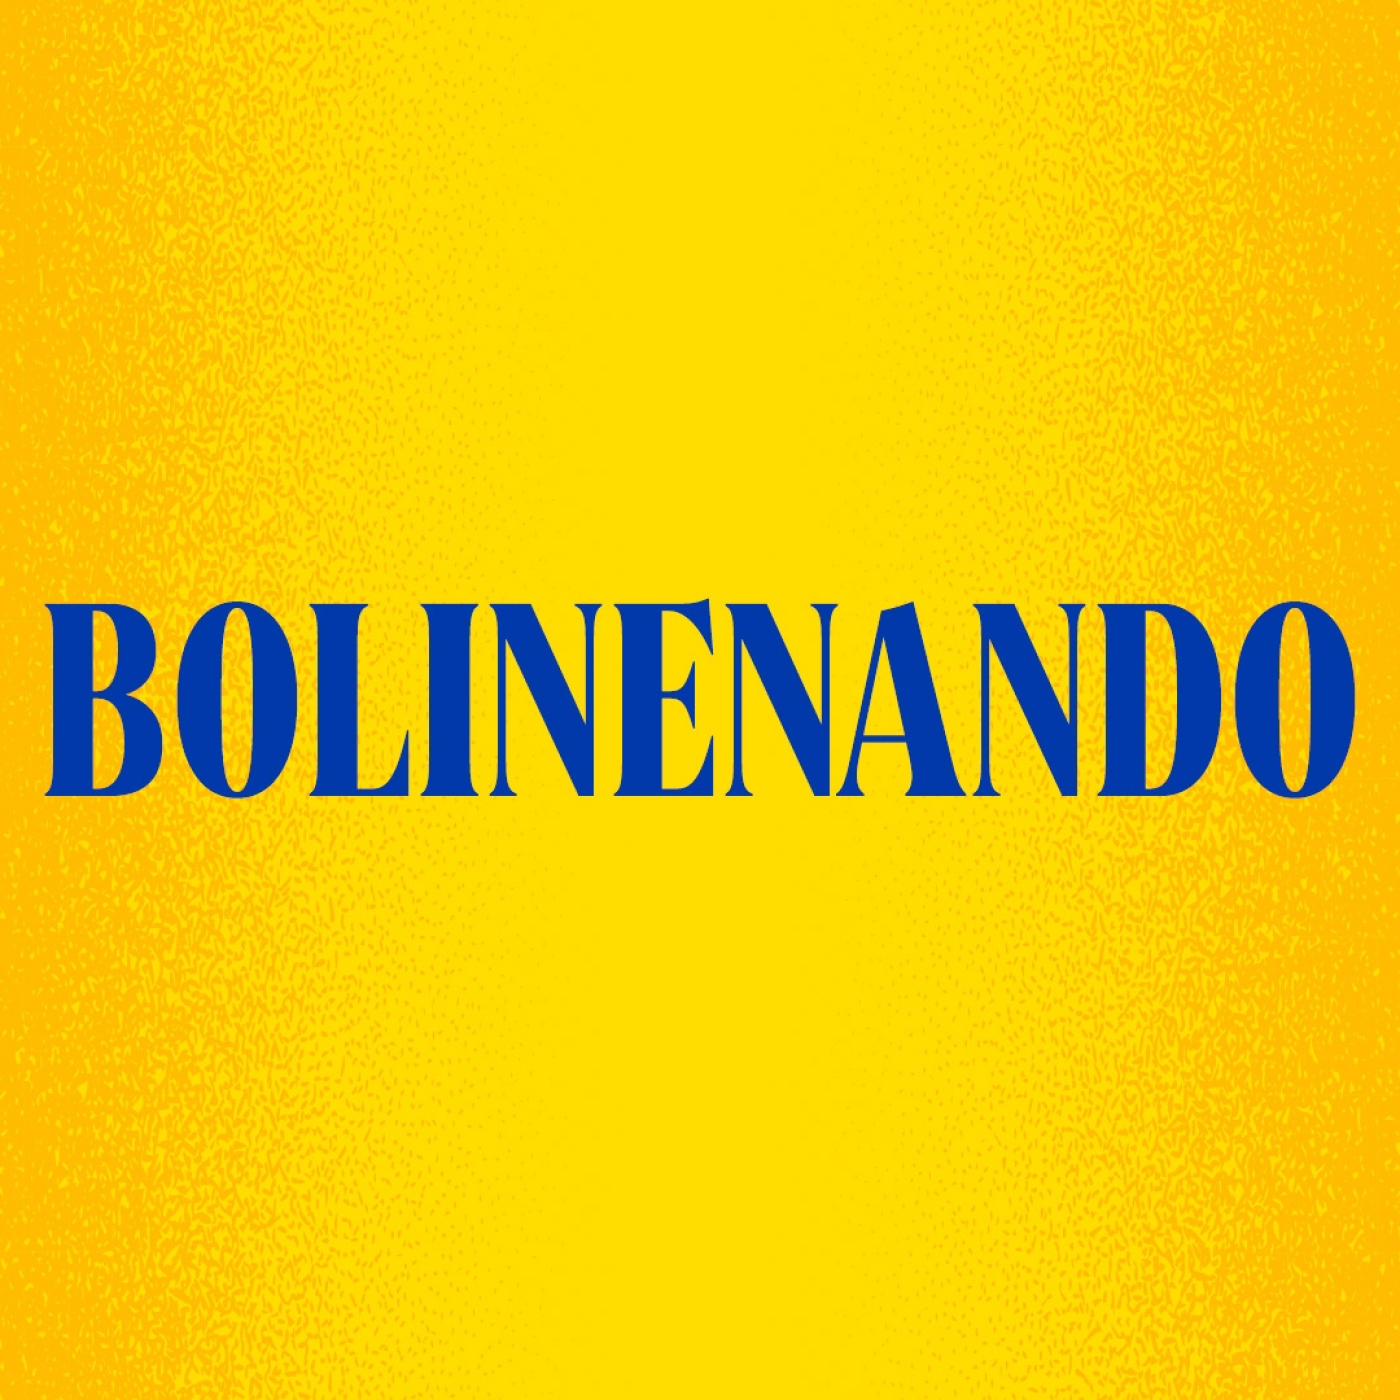 02-06-2021 Bolineando